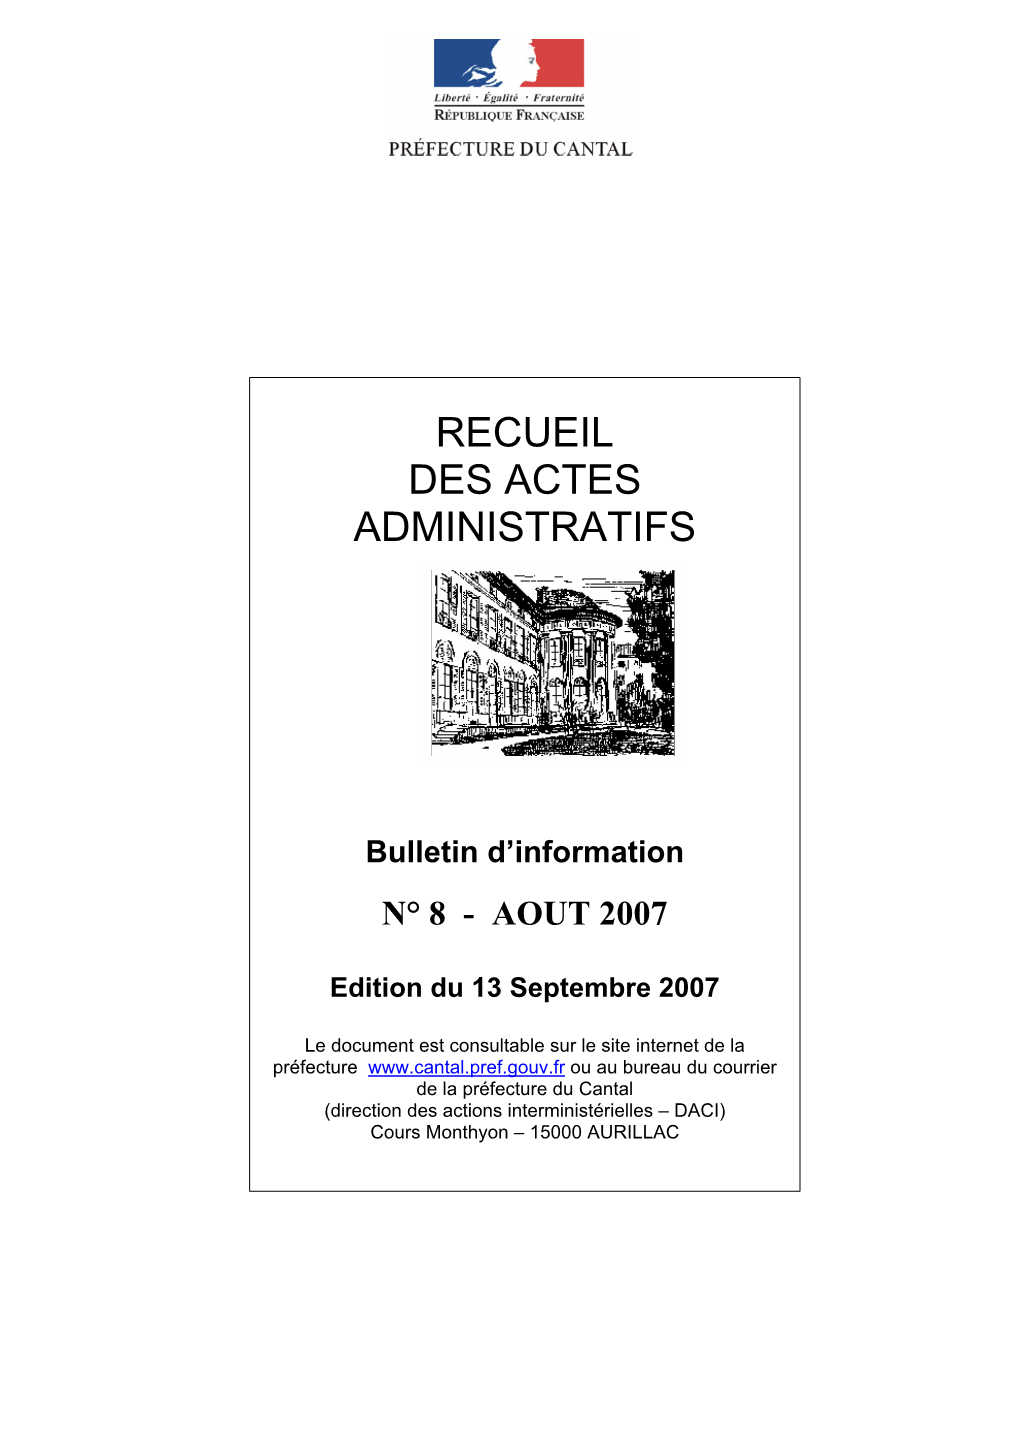 RECUEIL DES ACTES ADMINISTRATIFS N° 08 - AOUT 2007 Consultable Sur Le Site Internet Voir Rubrique : Bibliothèque